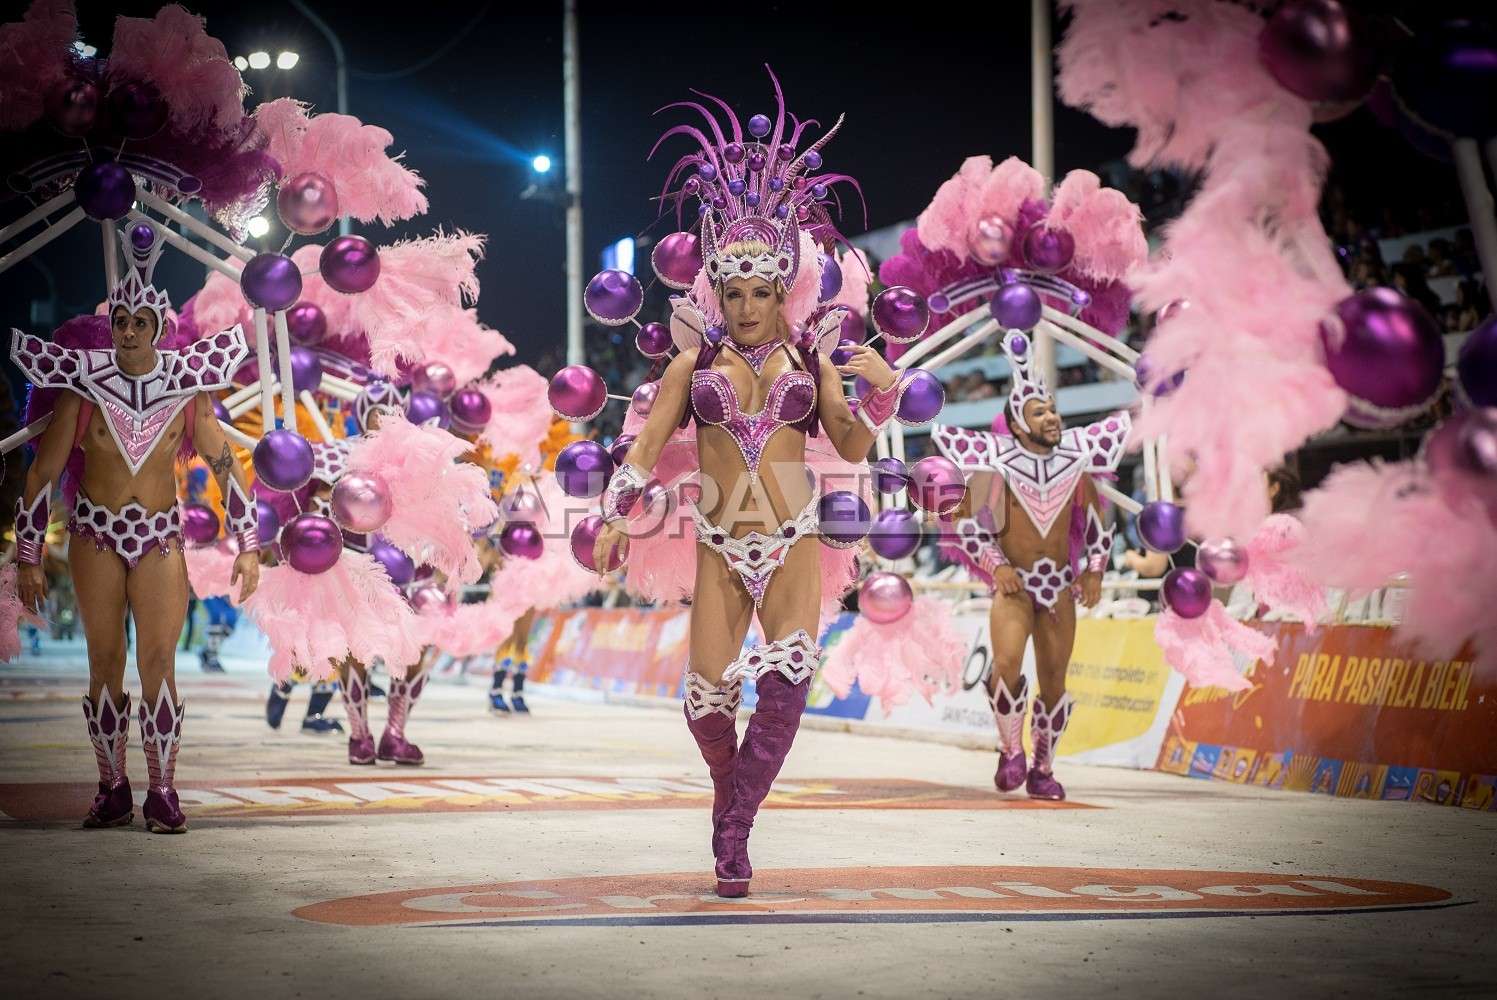 Mujeres, trans y carnavaleras: “El Carnaval de Gualeguaychú es un producto LGBT”